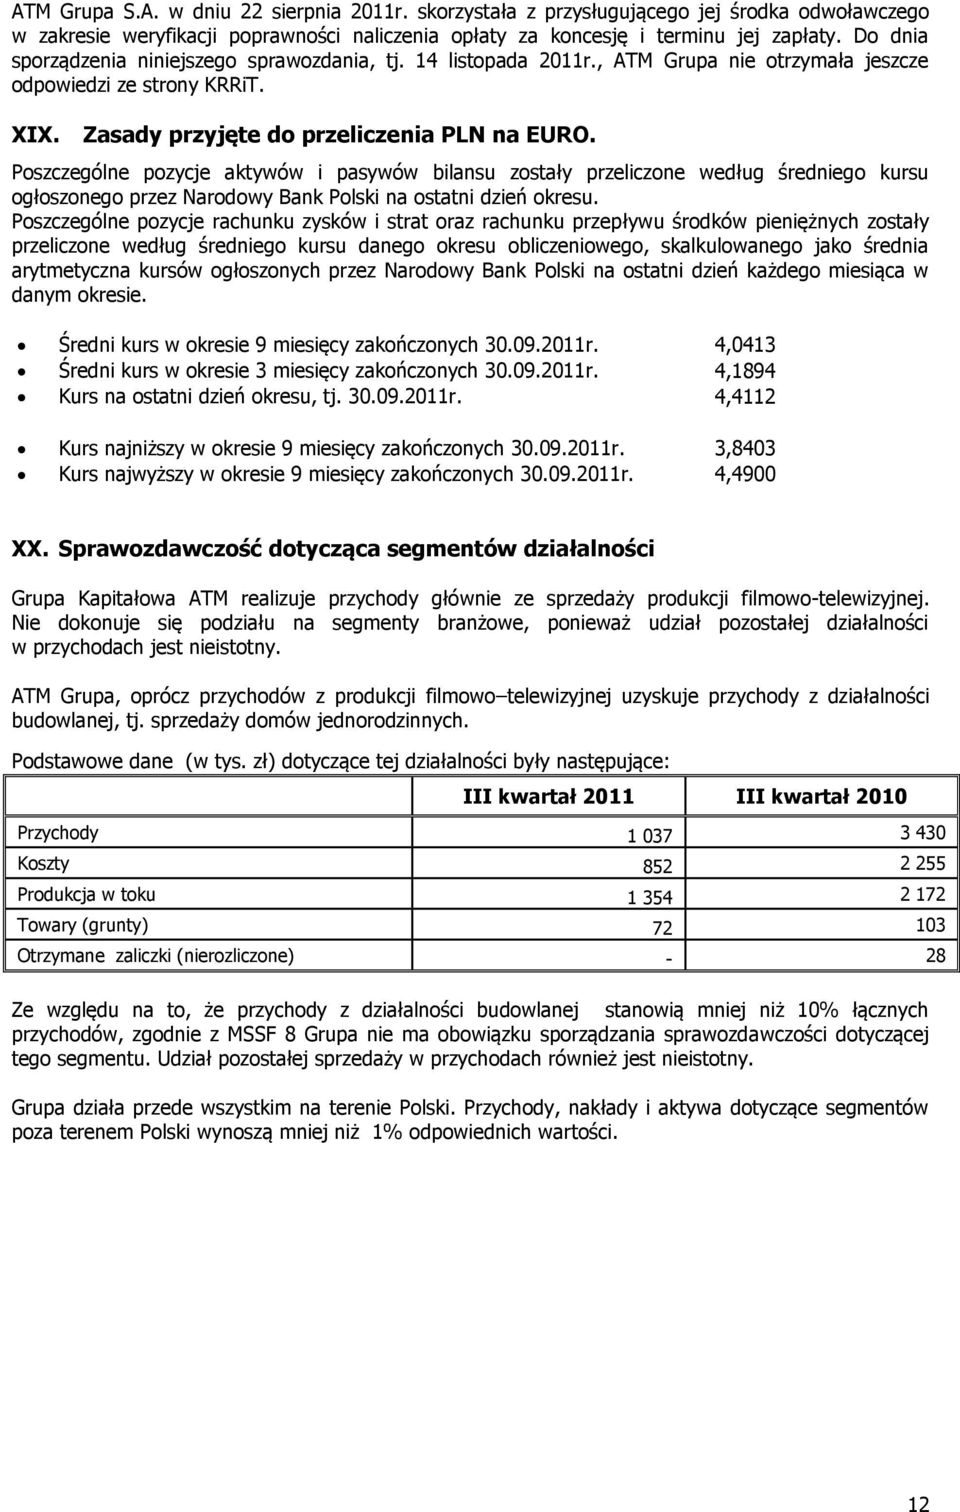 Poszczególne pozycje aktywów i pasywów bilansu zostały przeliczone według średniego kursu ogłoszonego przez Narodowy Bank Polski na ostatni dzień okresu.